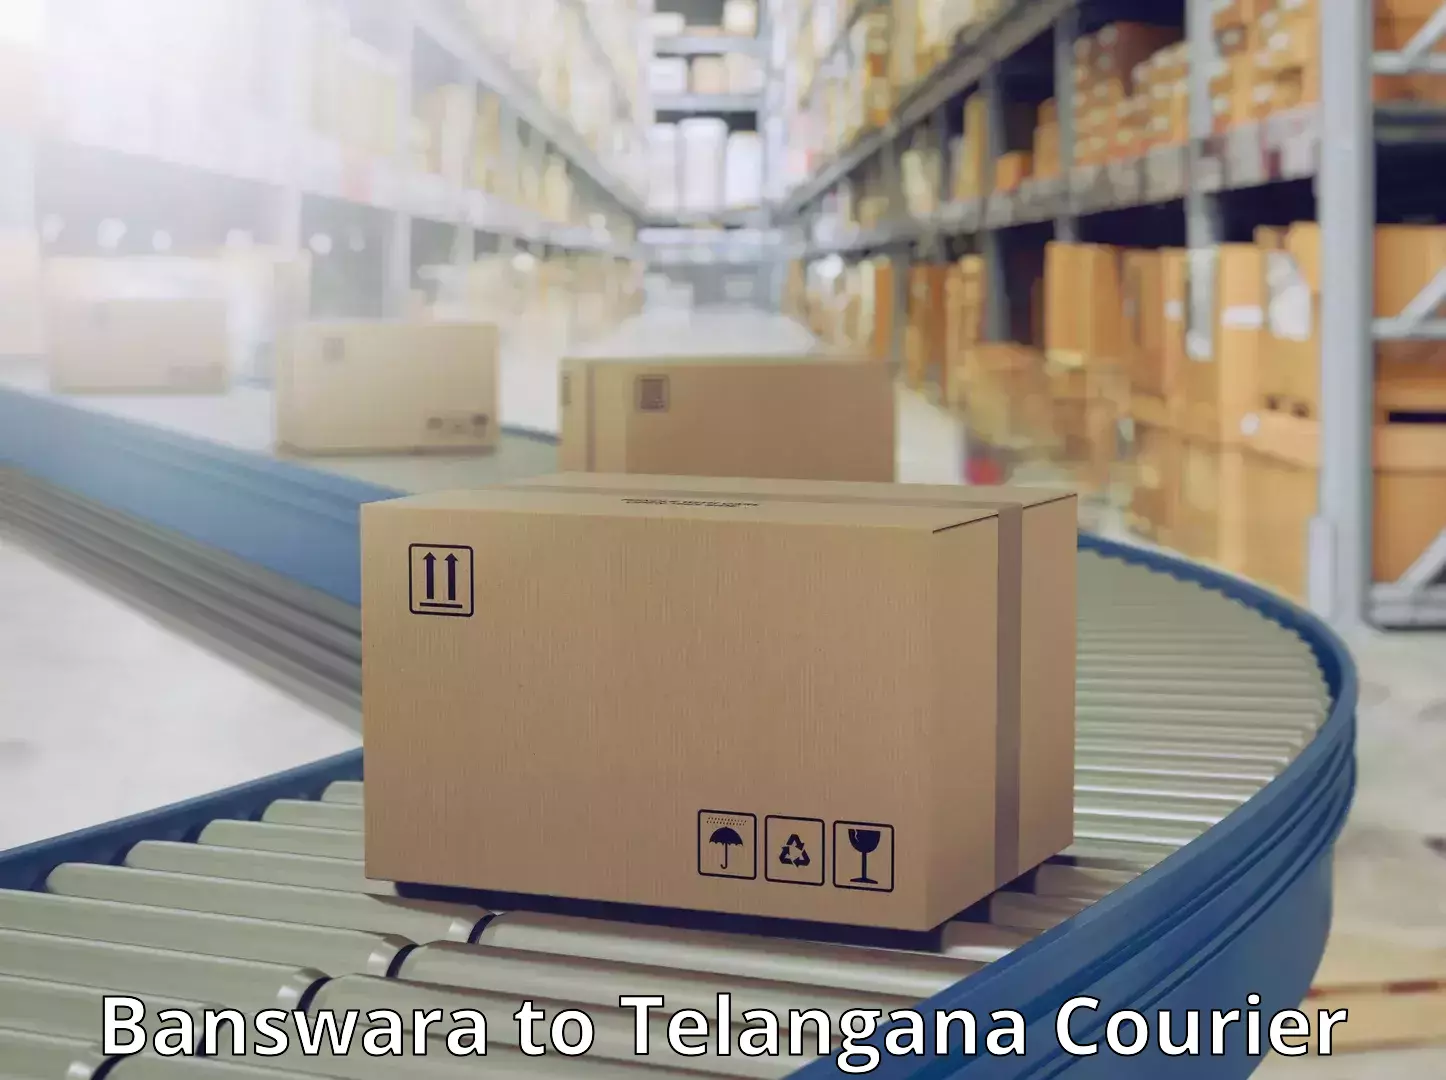 24/7 courier service in Banswara to Telangana